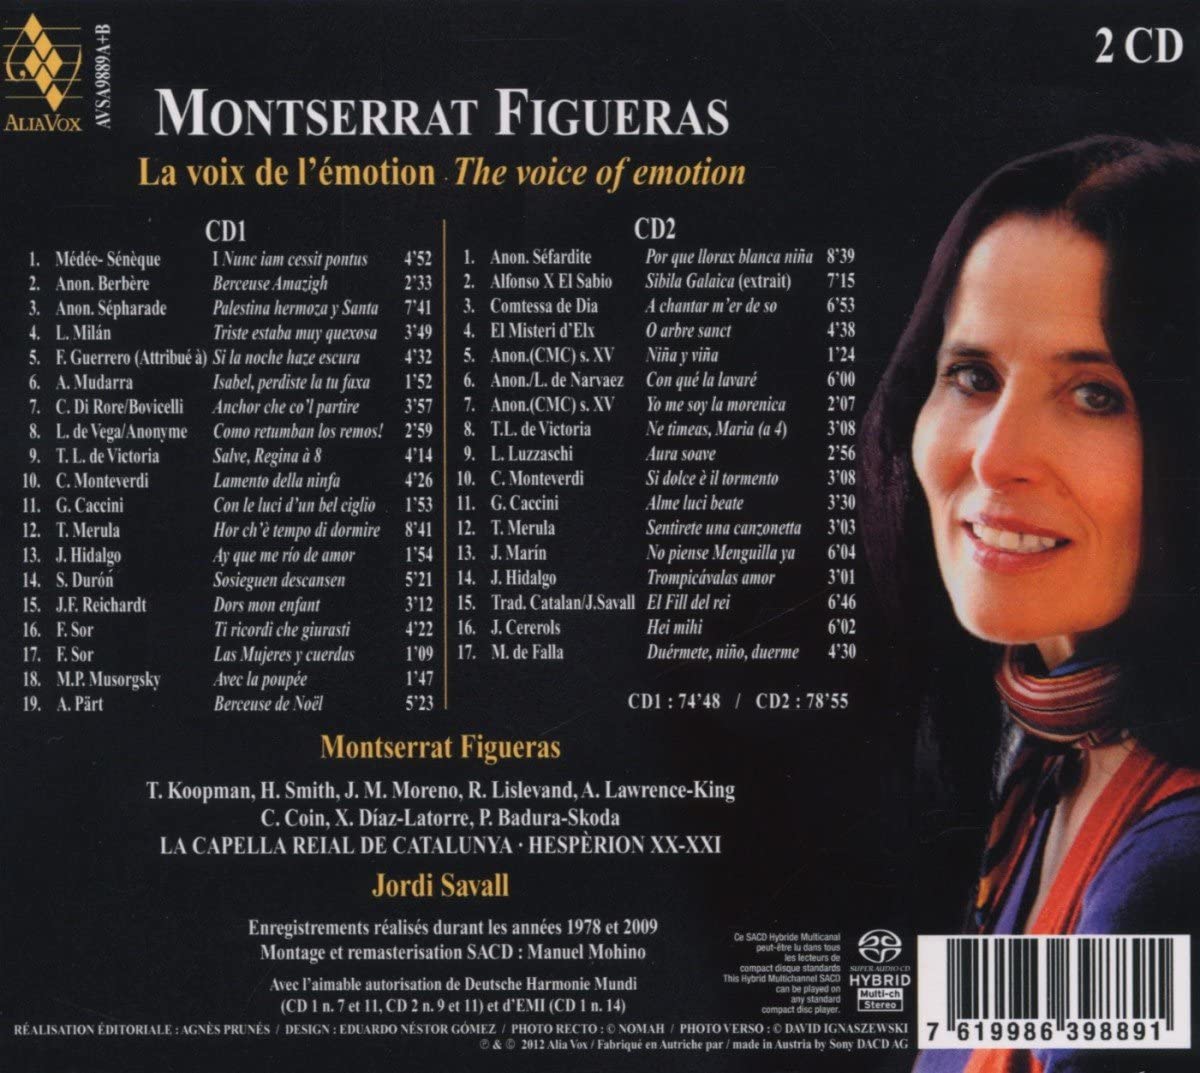 Montserrat Figueras 성모의 목소리로 - 몽세라 피구에라스 추모반 (La Voix de l’ Emotion I - The Voice of Emotion)